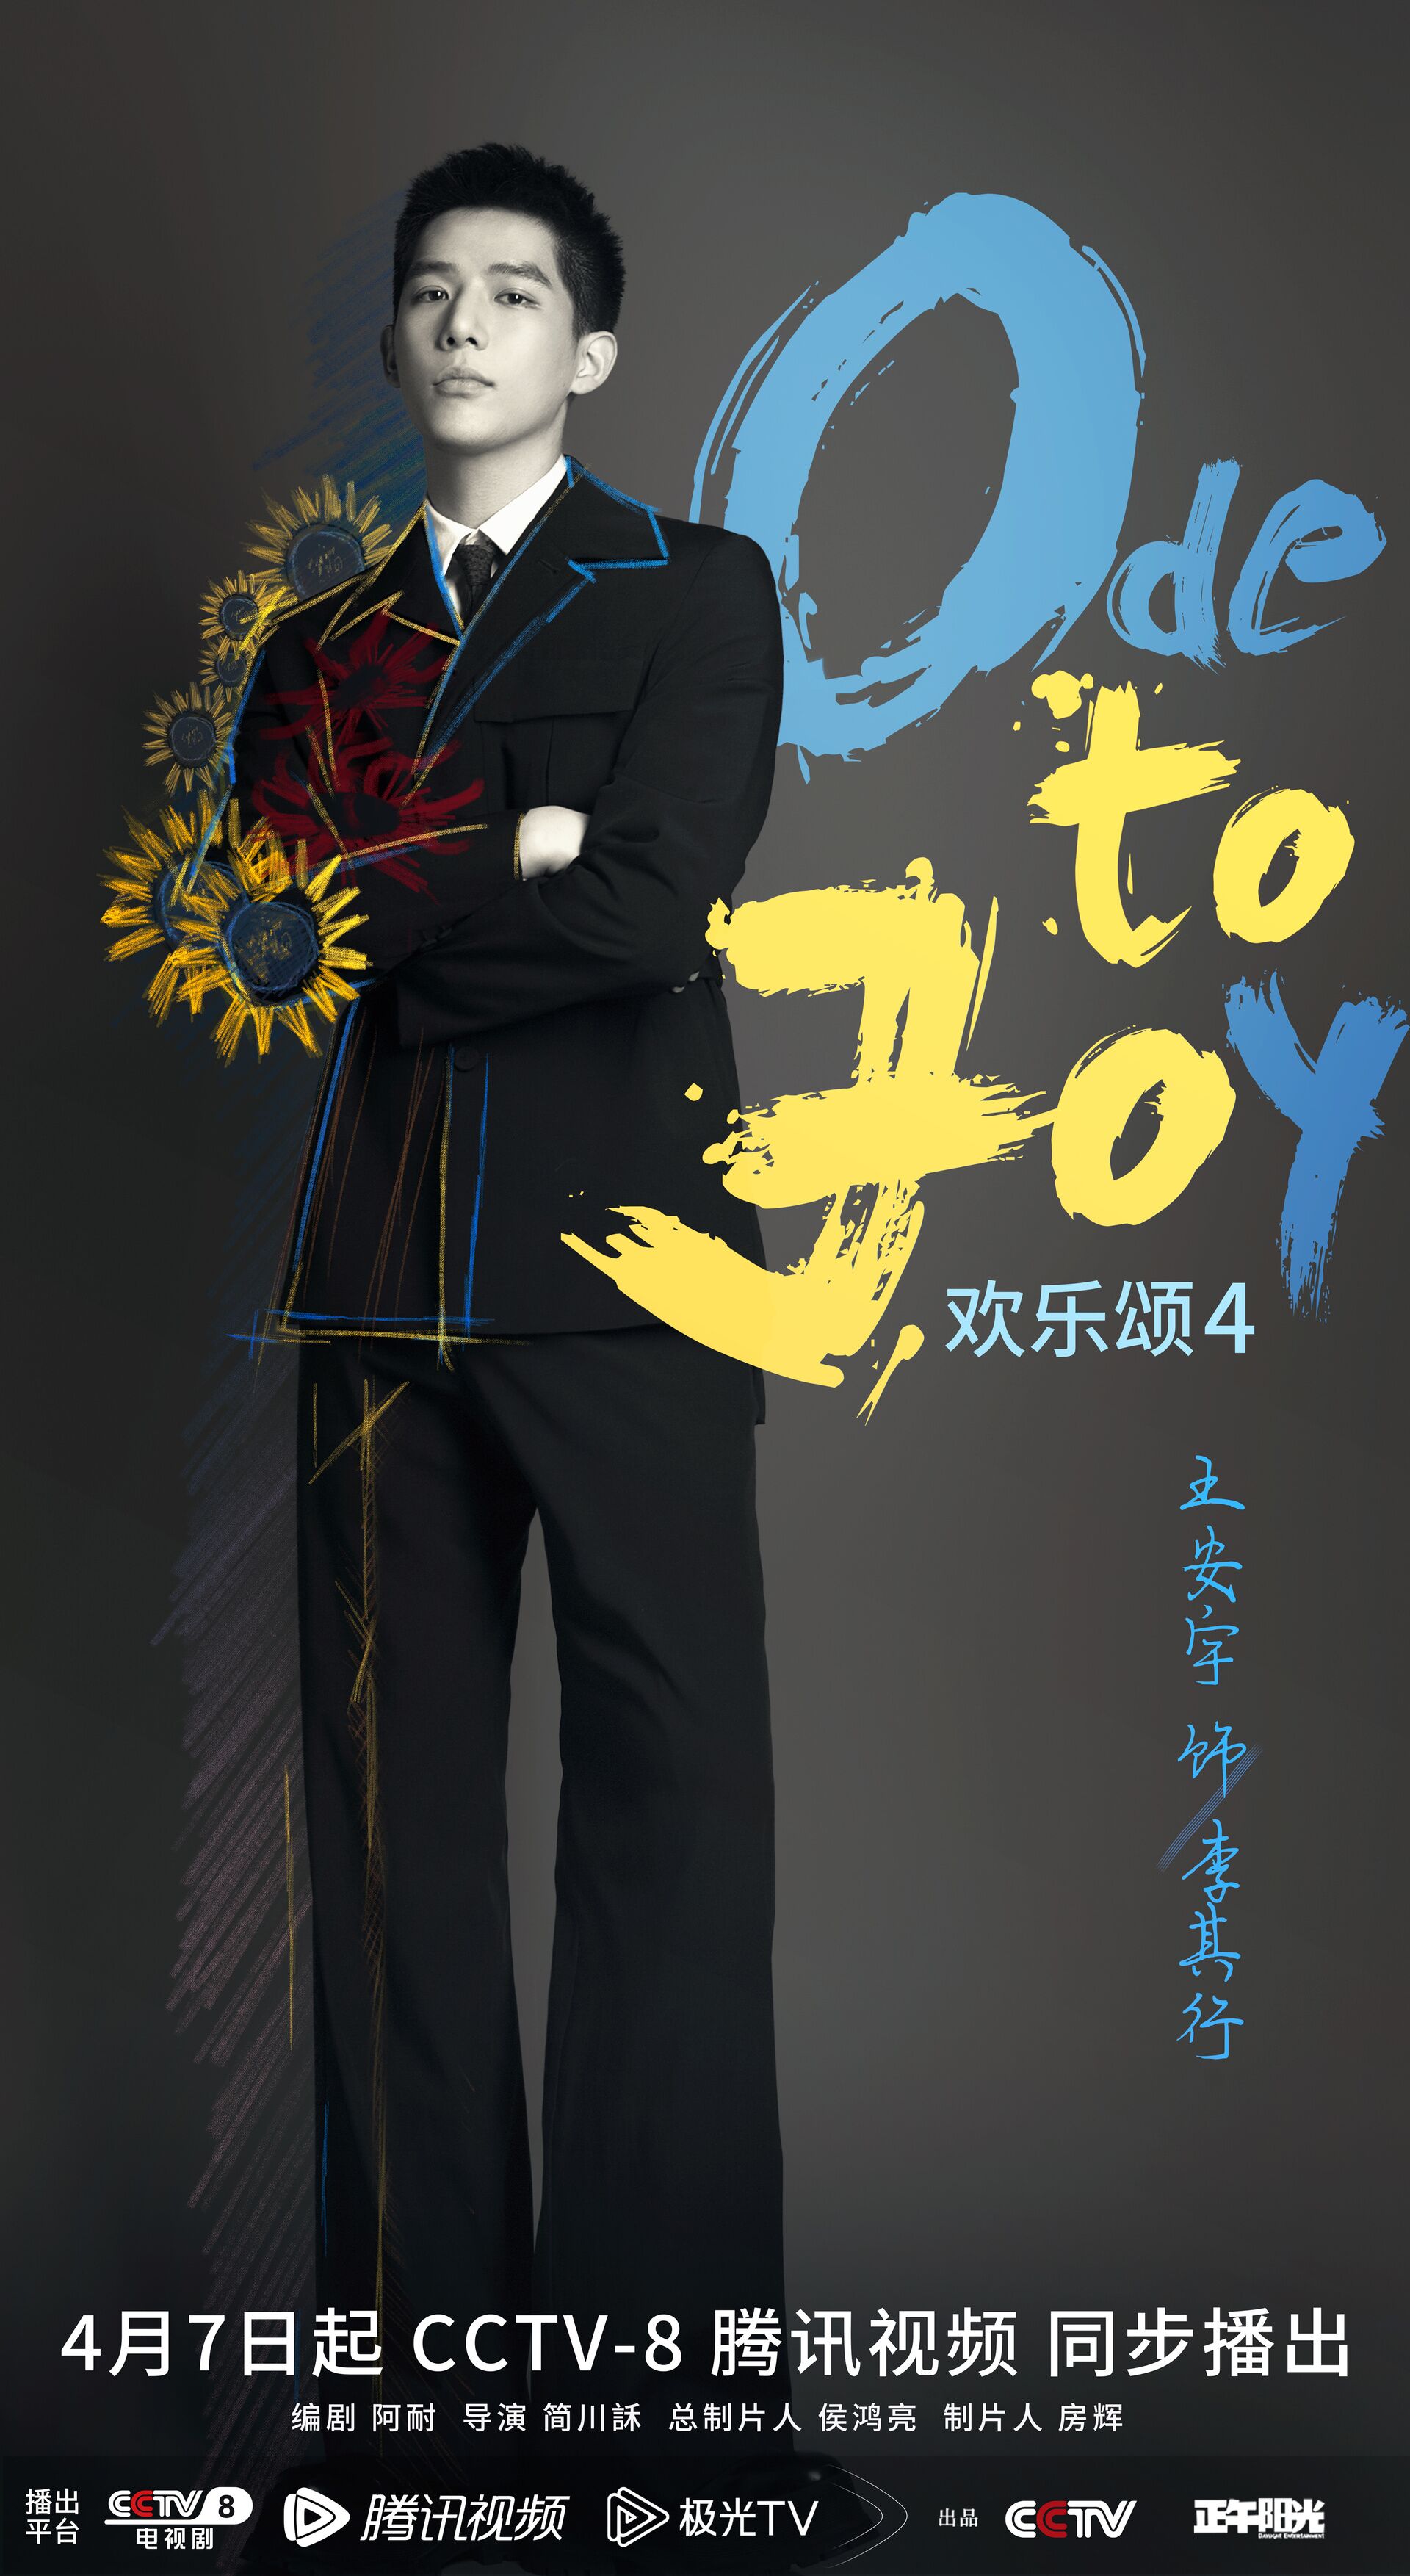 Ode to Joy Season 4 with Wang Anyu